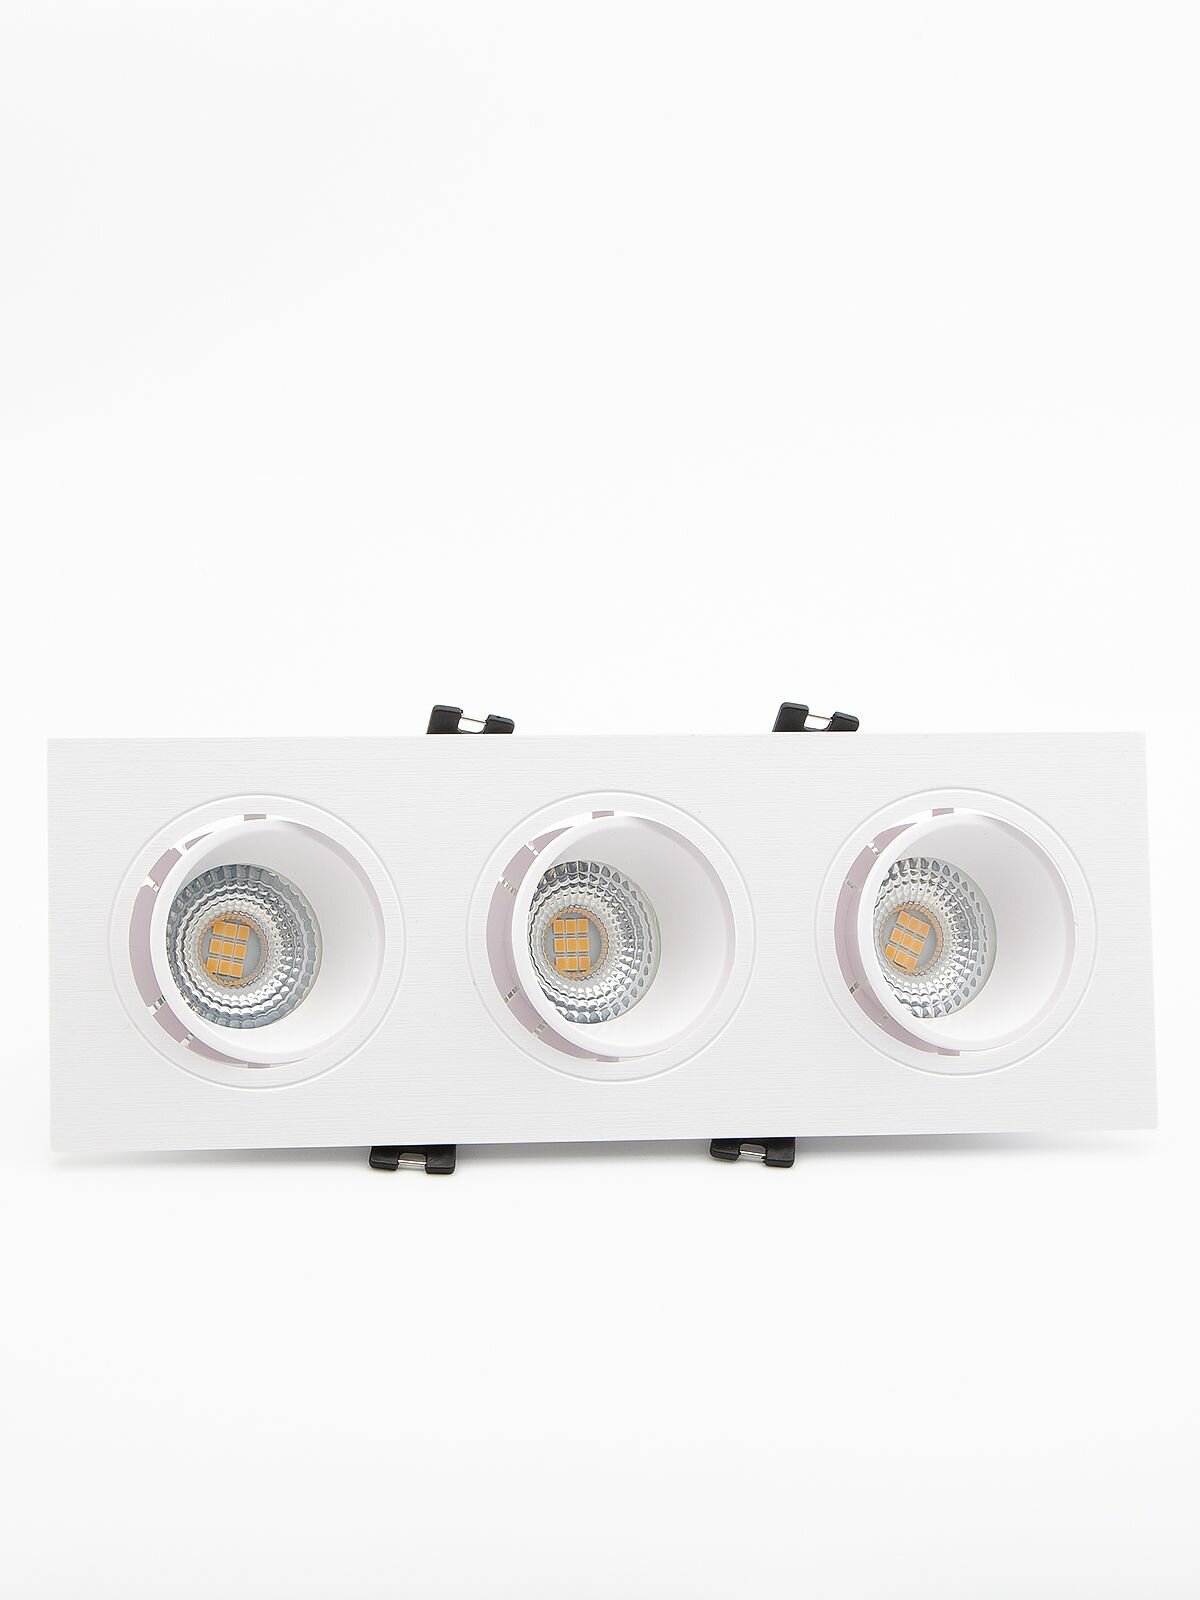 Встраиваемый светильник потолочный Maple Lamp RS-05-GU10-03SD-WHITE, белый, GU10